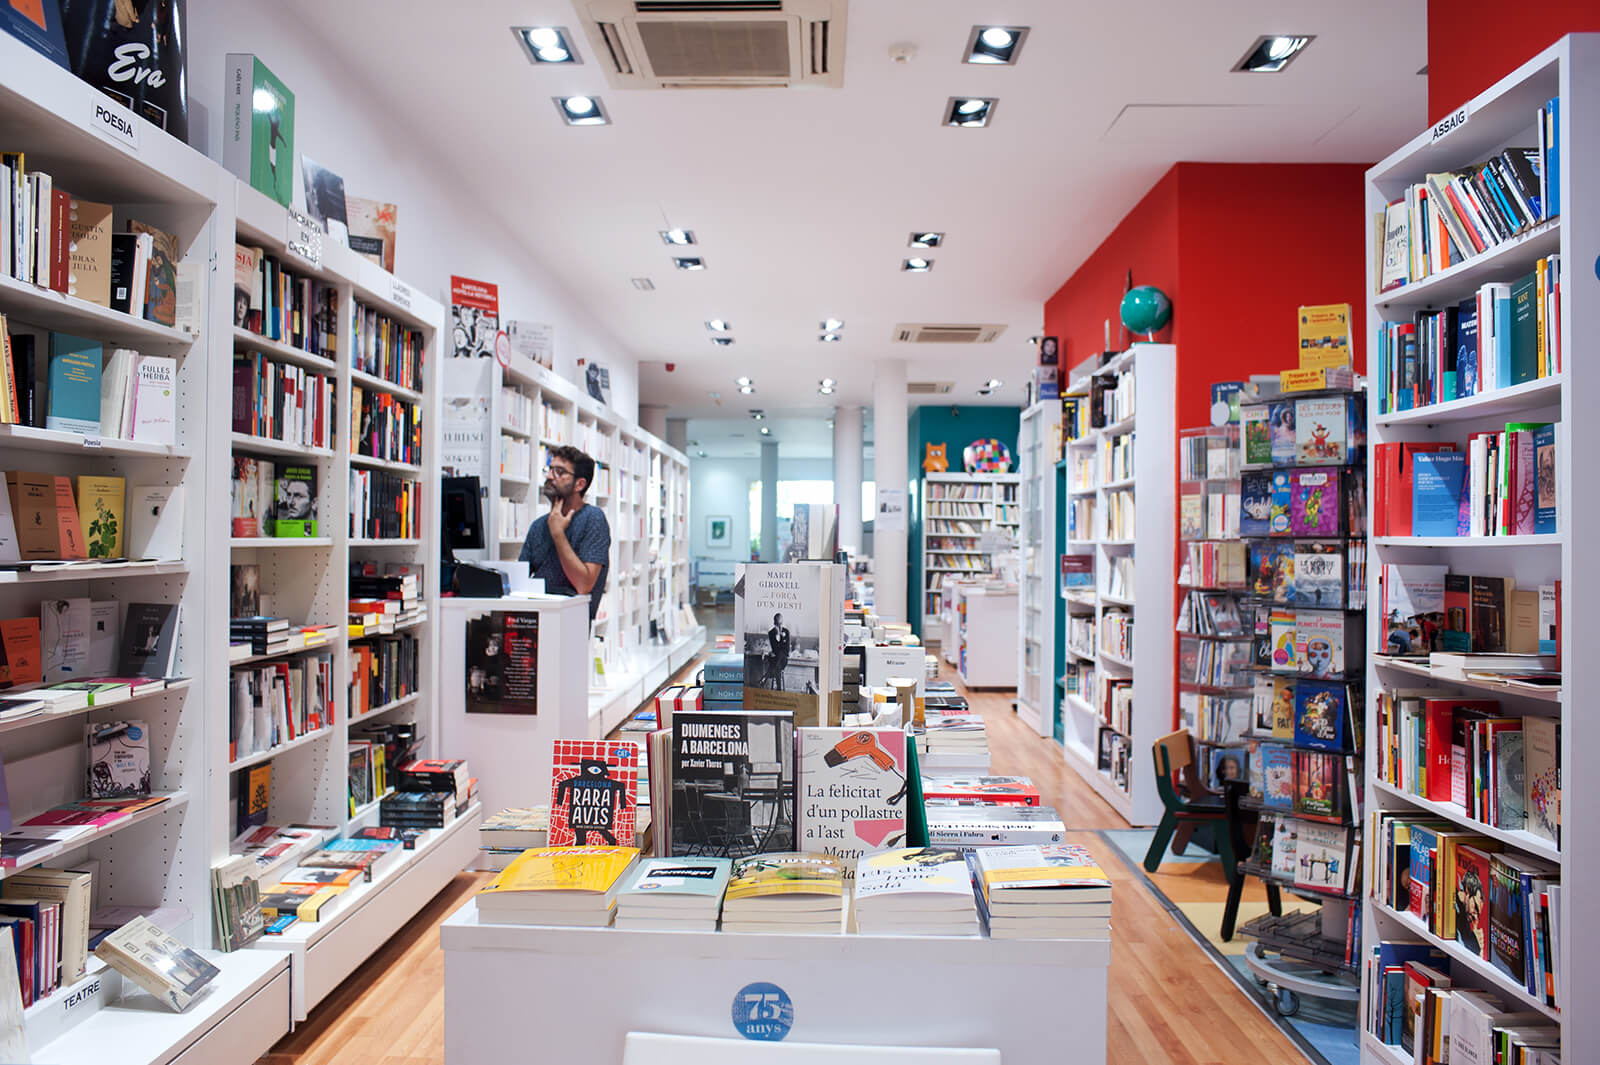 La llibreria Jaimes